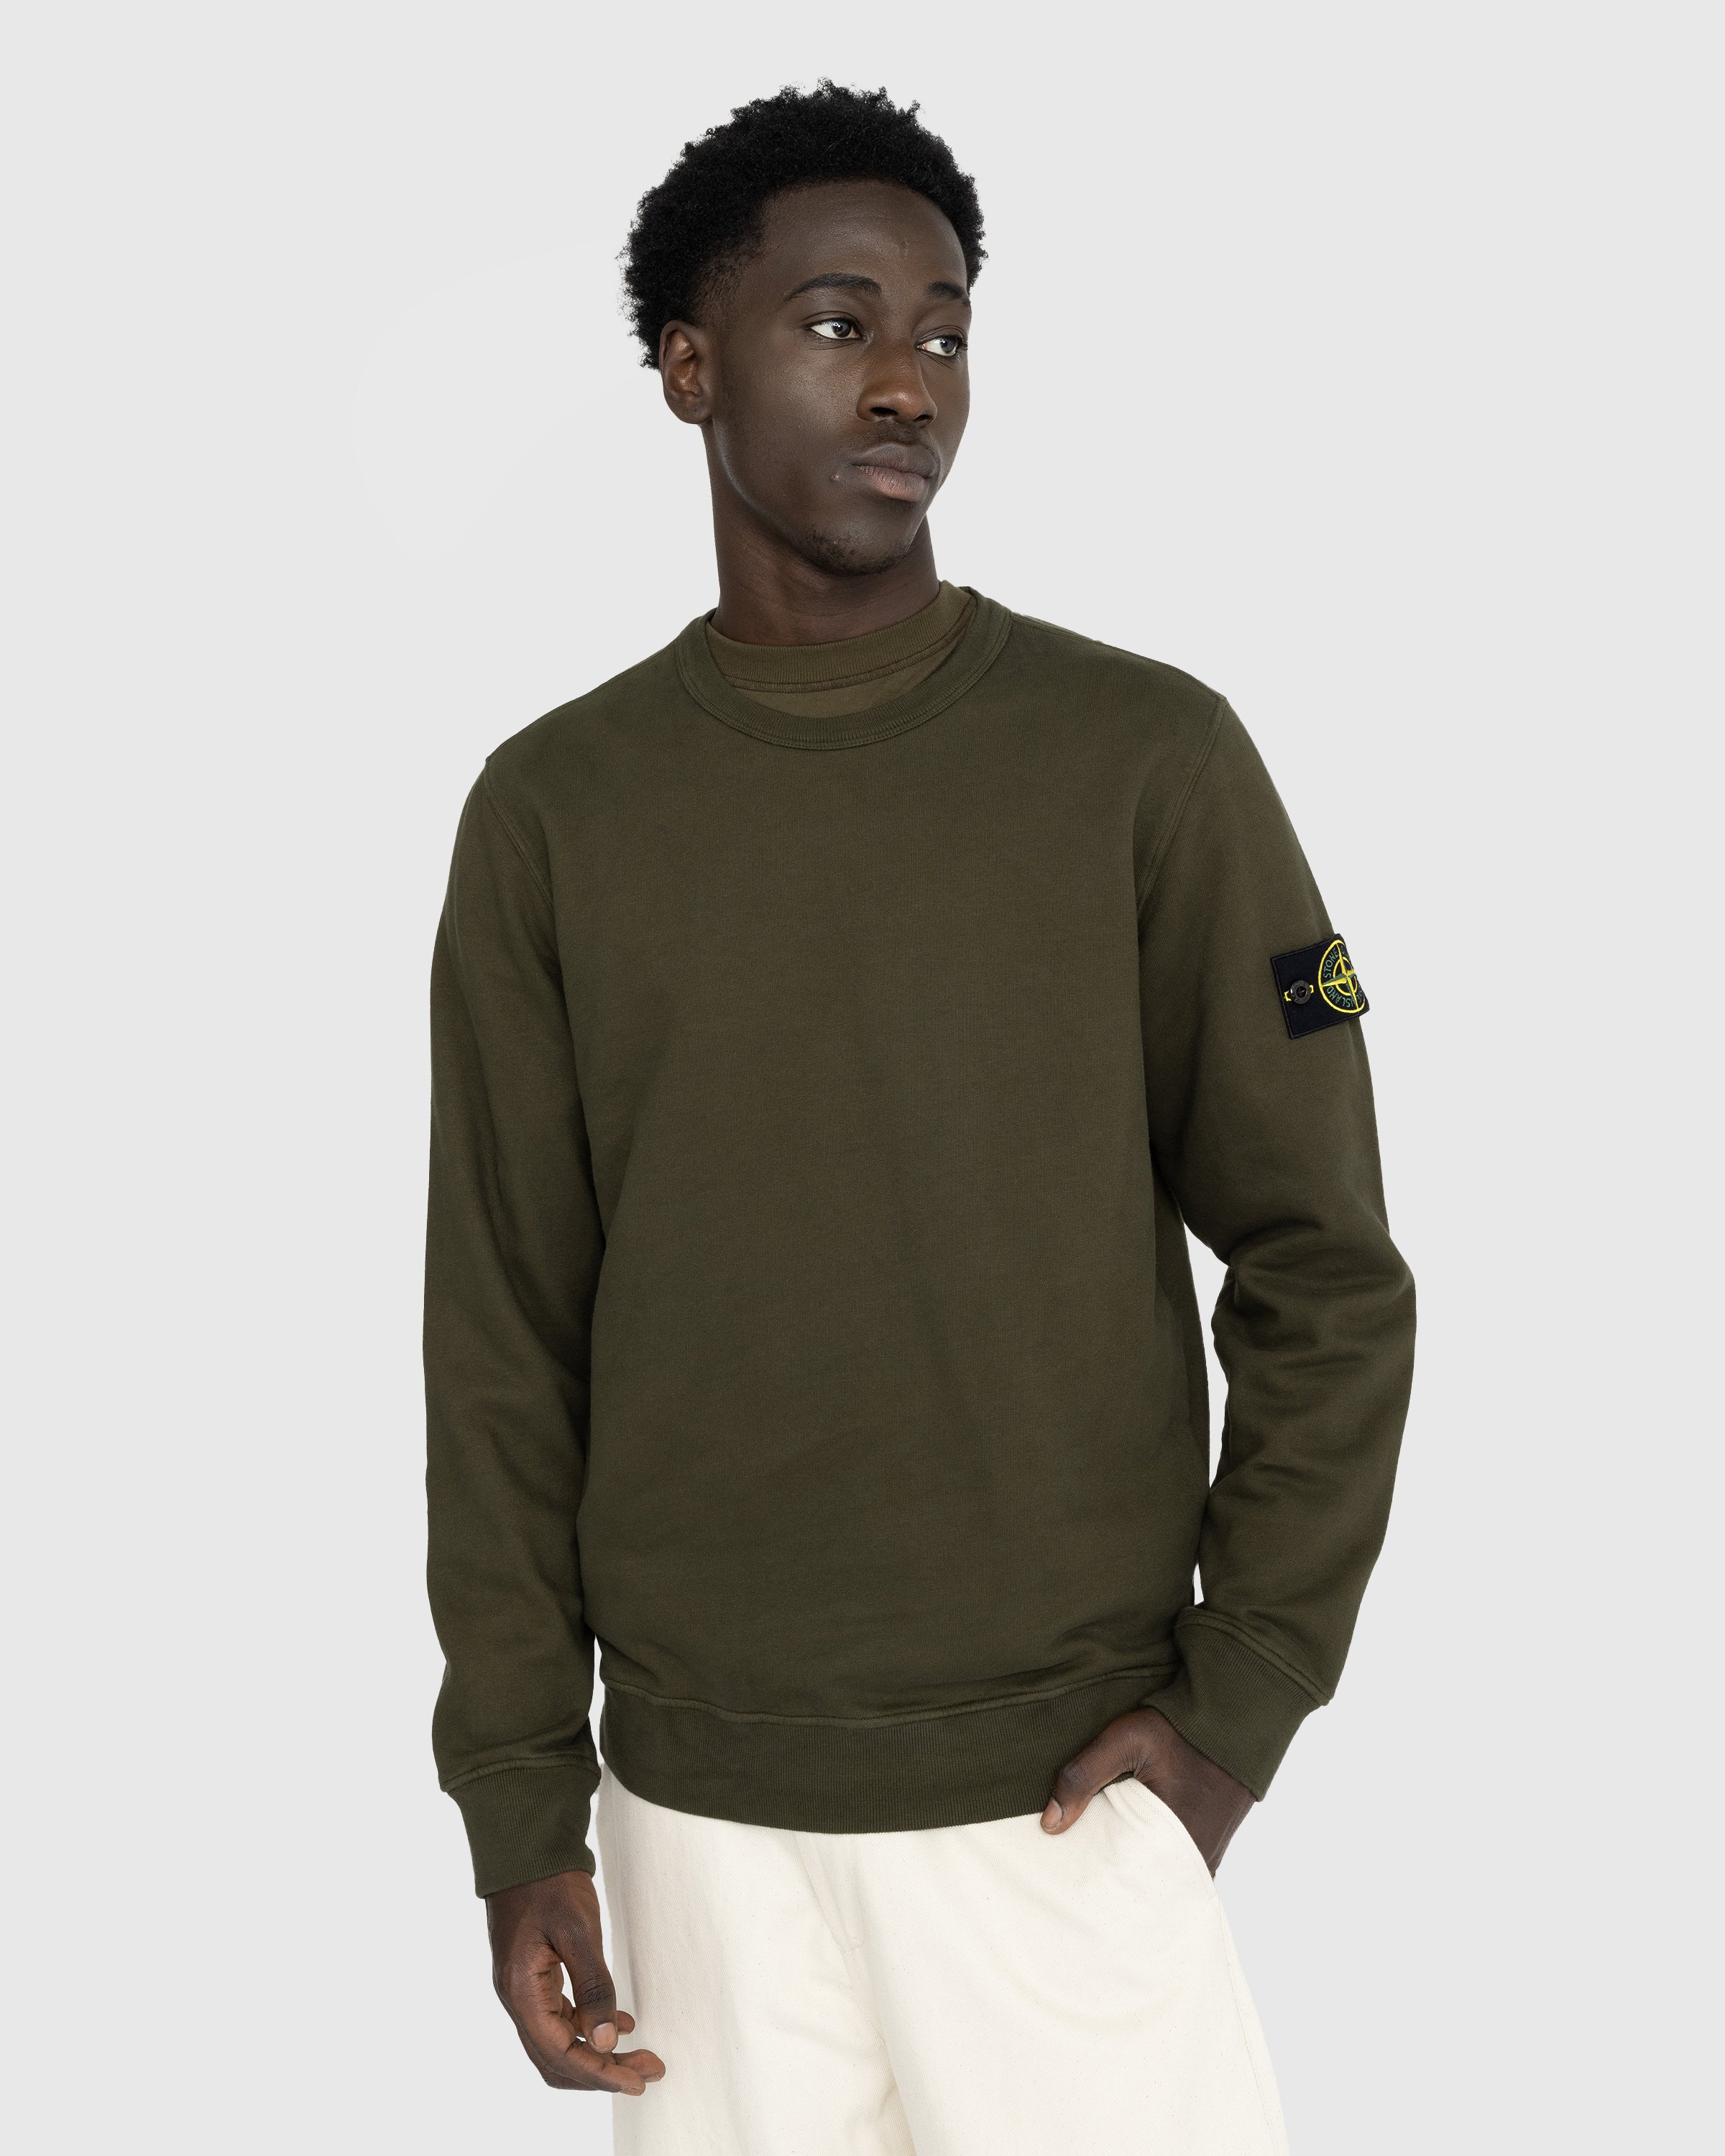 Stone Island - Garment-Dyed Brushed Fleece Crewneck Olive - Clothing - Green - Image 2